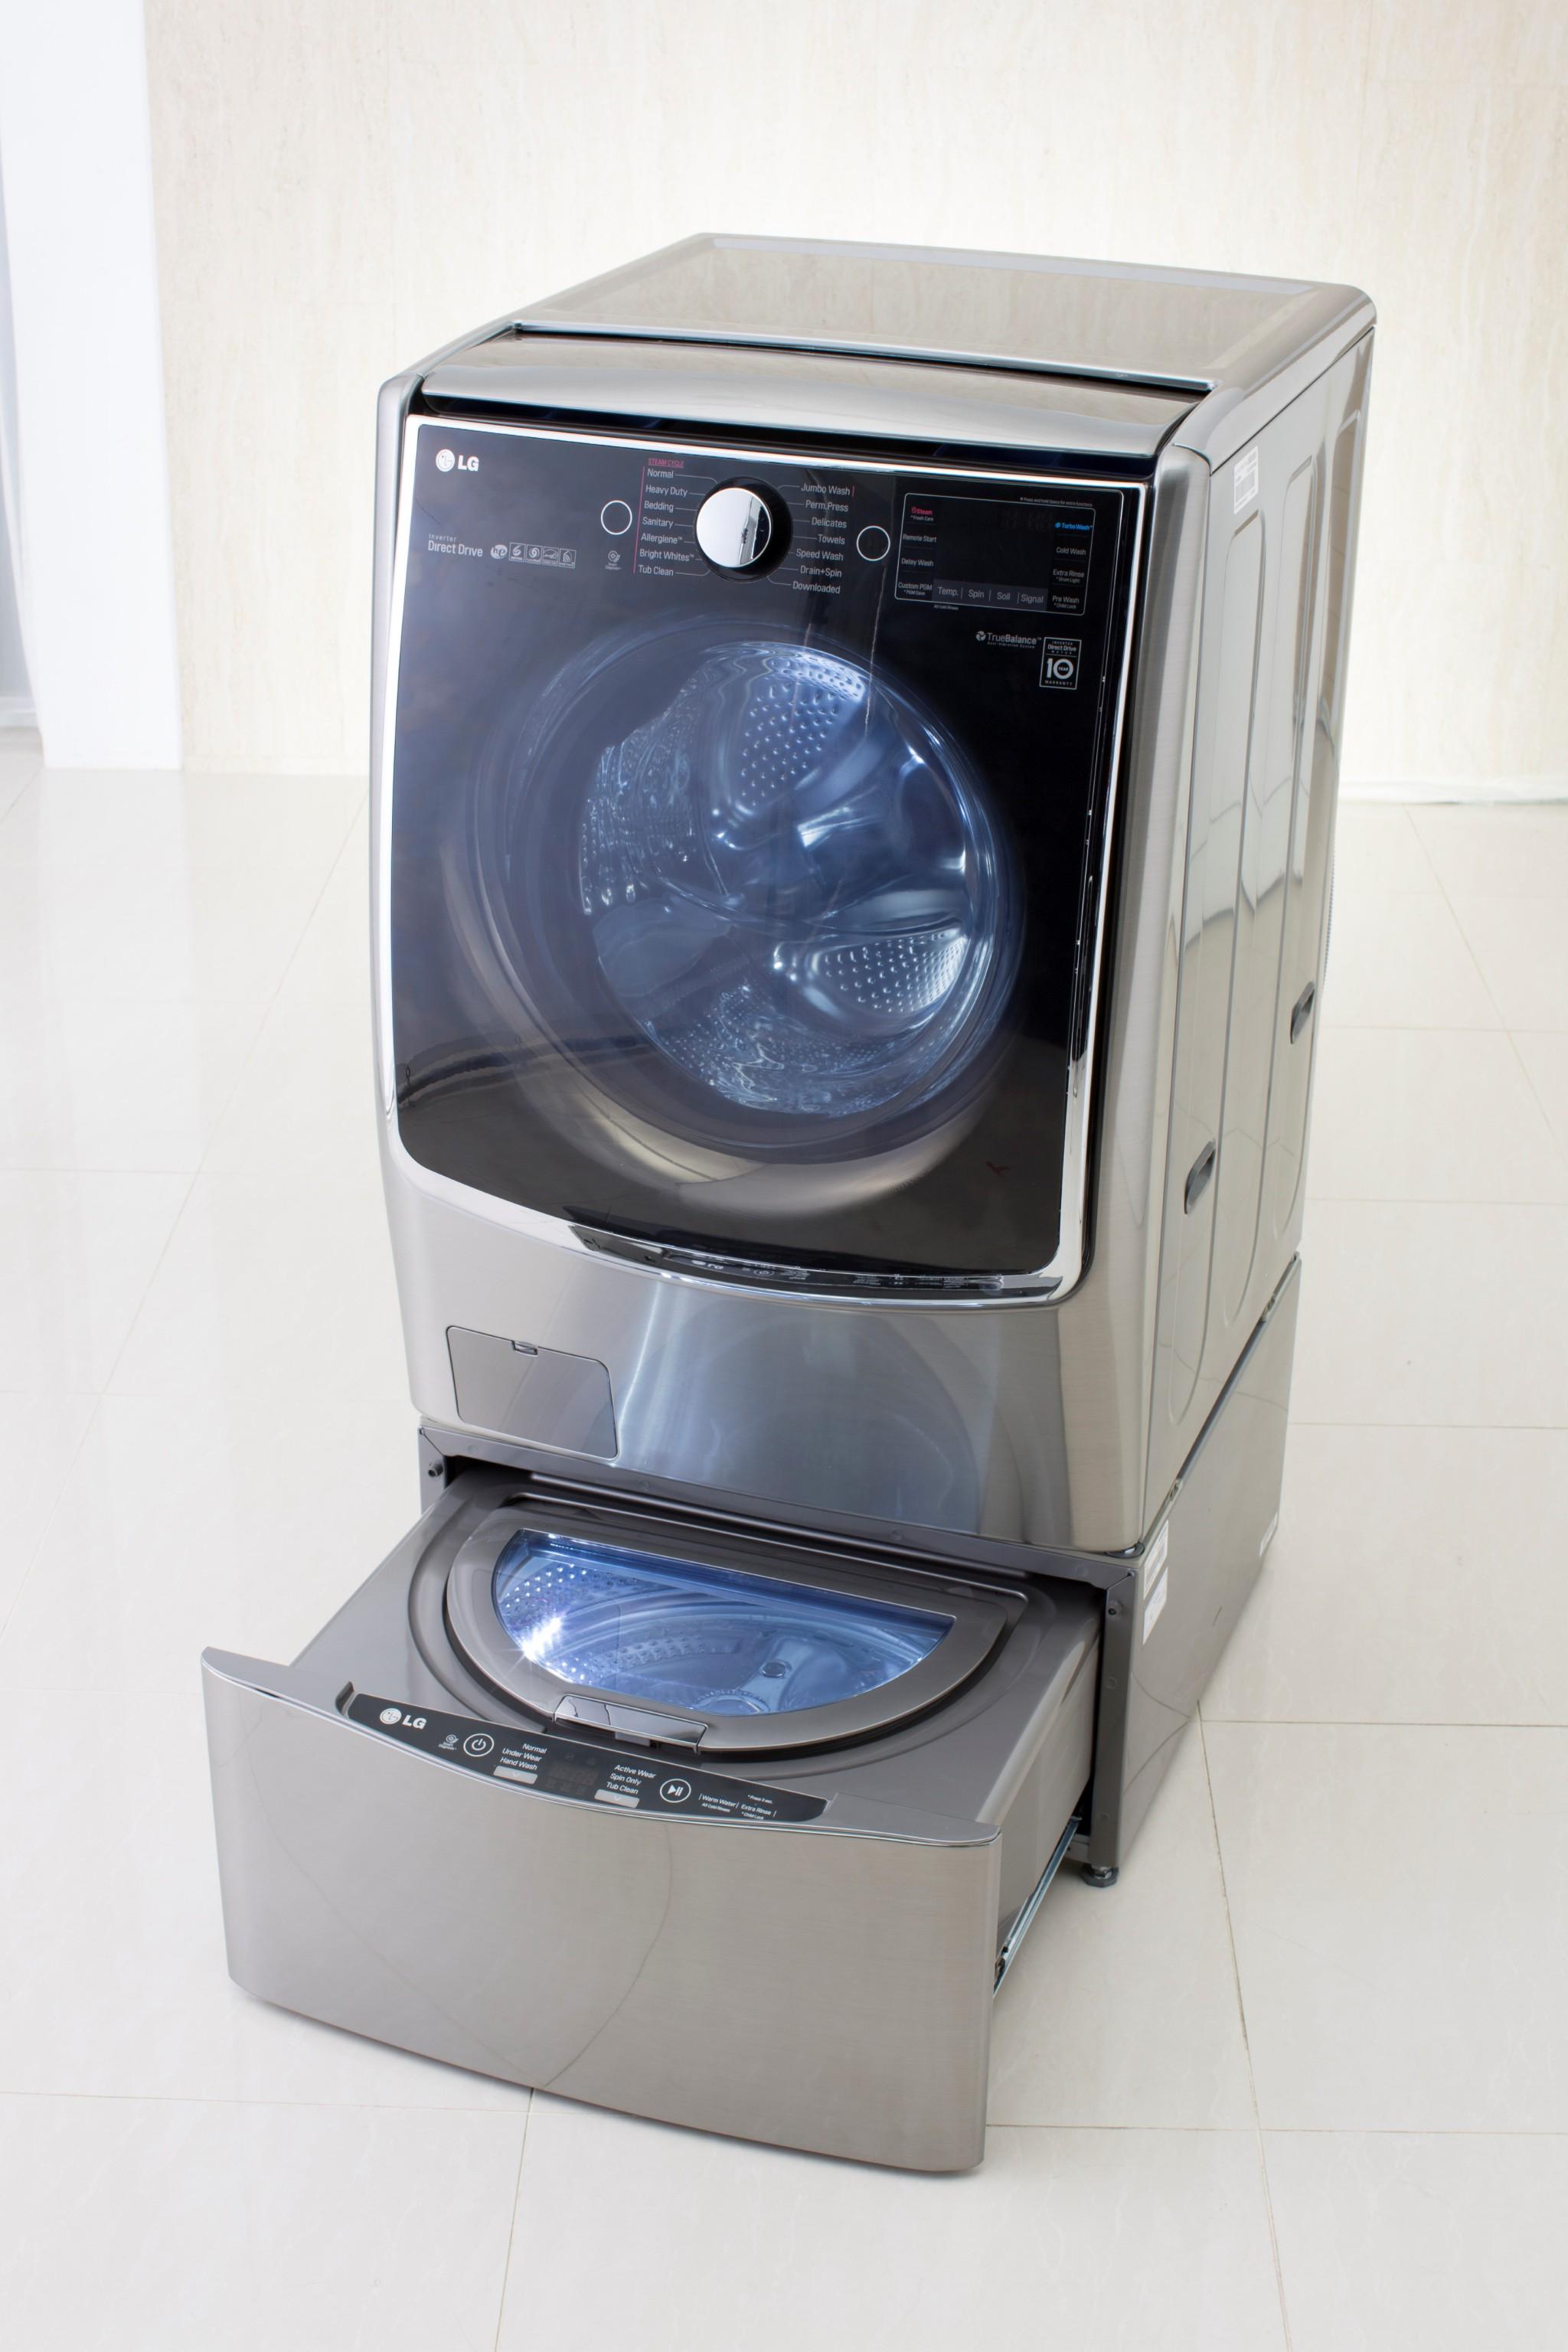 Federico Ini on Twitter: "LG presentó un lavarropas inteligente de doble tambor para lavar tipos de prendas a la vez. http://t.co/JDjruKfqr6" / Twitter